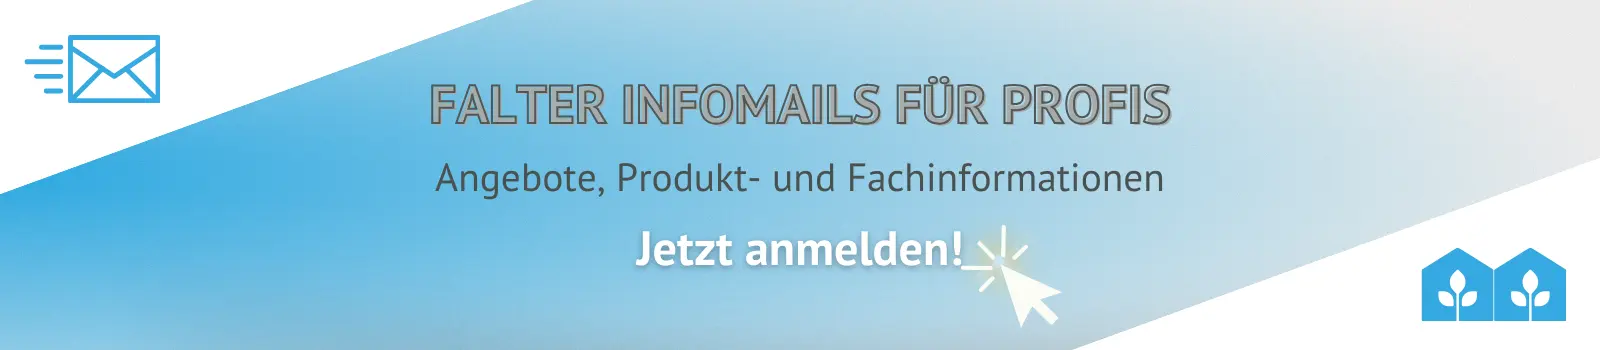 Falter Infomail für Profis, Angebote, Fach- und Produktinformationen, jetzt anmelden. https://www.falter-naturduenger.de/infomail/